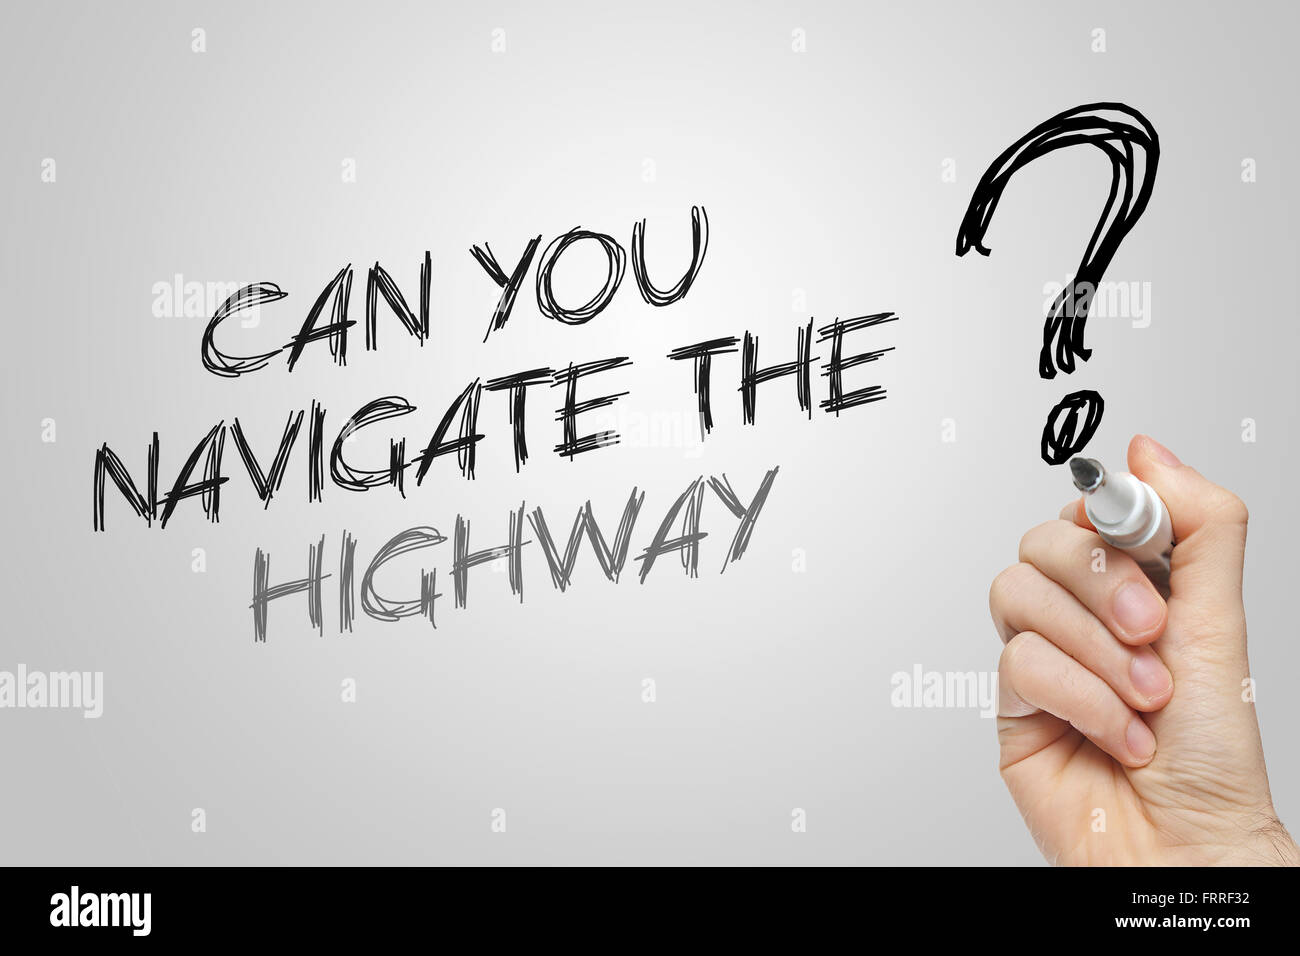 Handschrift, navigieren Sie die Autobahn auf grauem Hintergrund Stockfoto